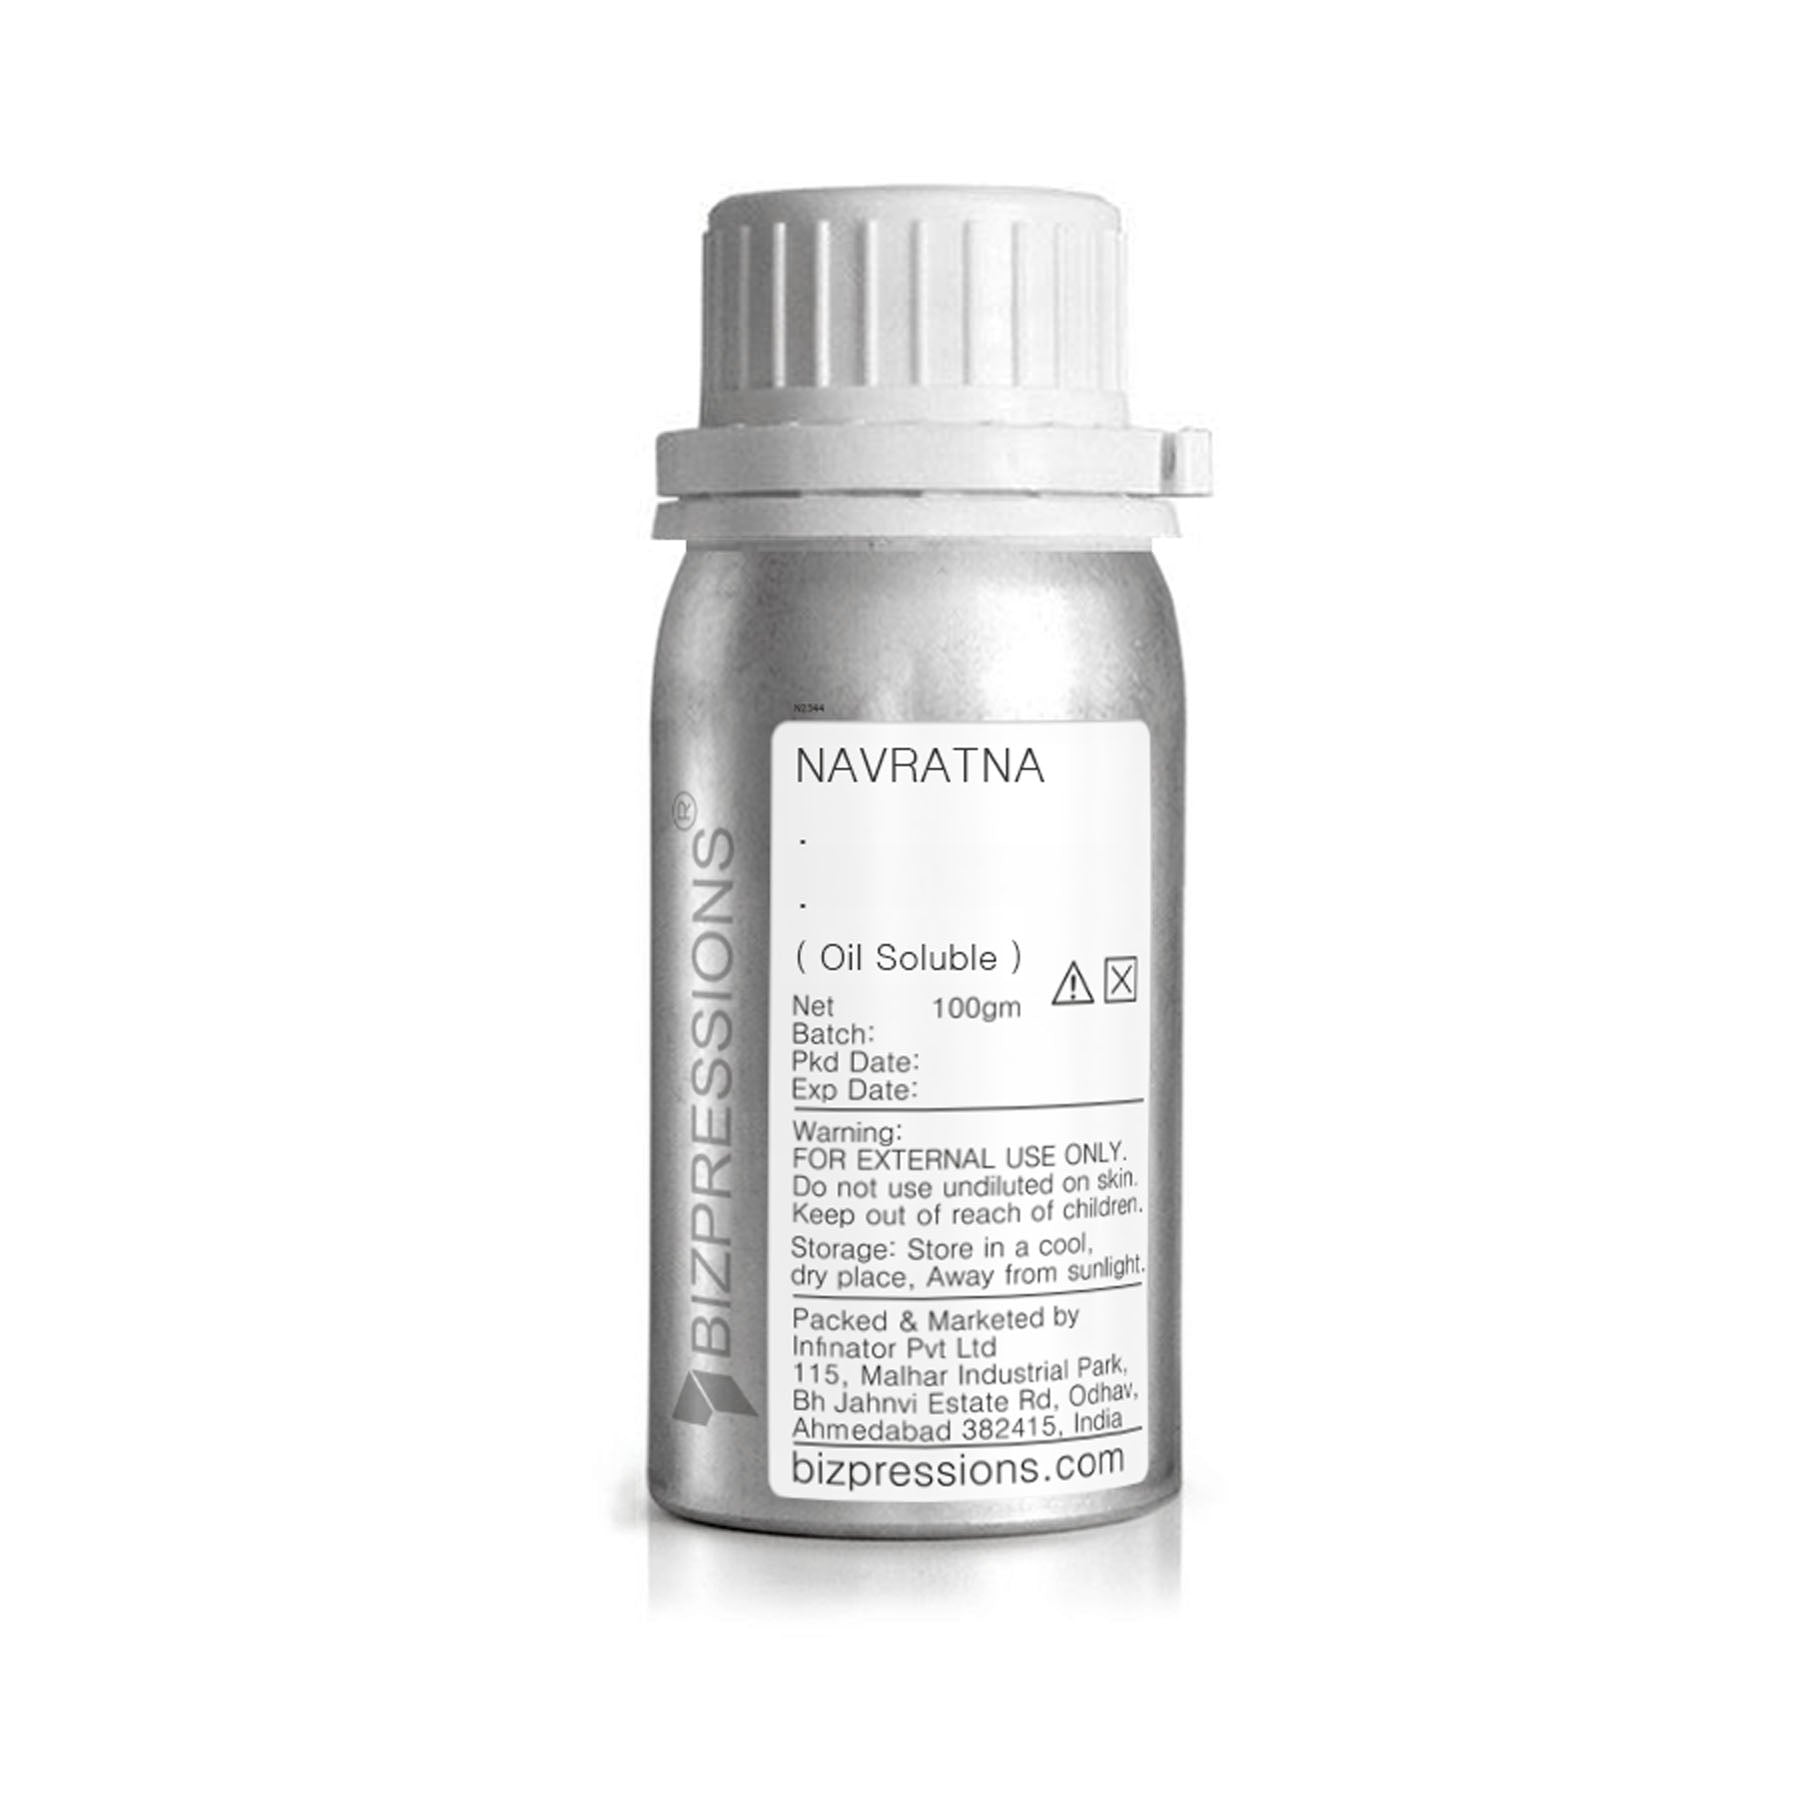 NAVRATNA - Fragrance ( Oil Soluble ) - 100 gm